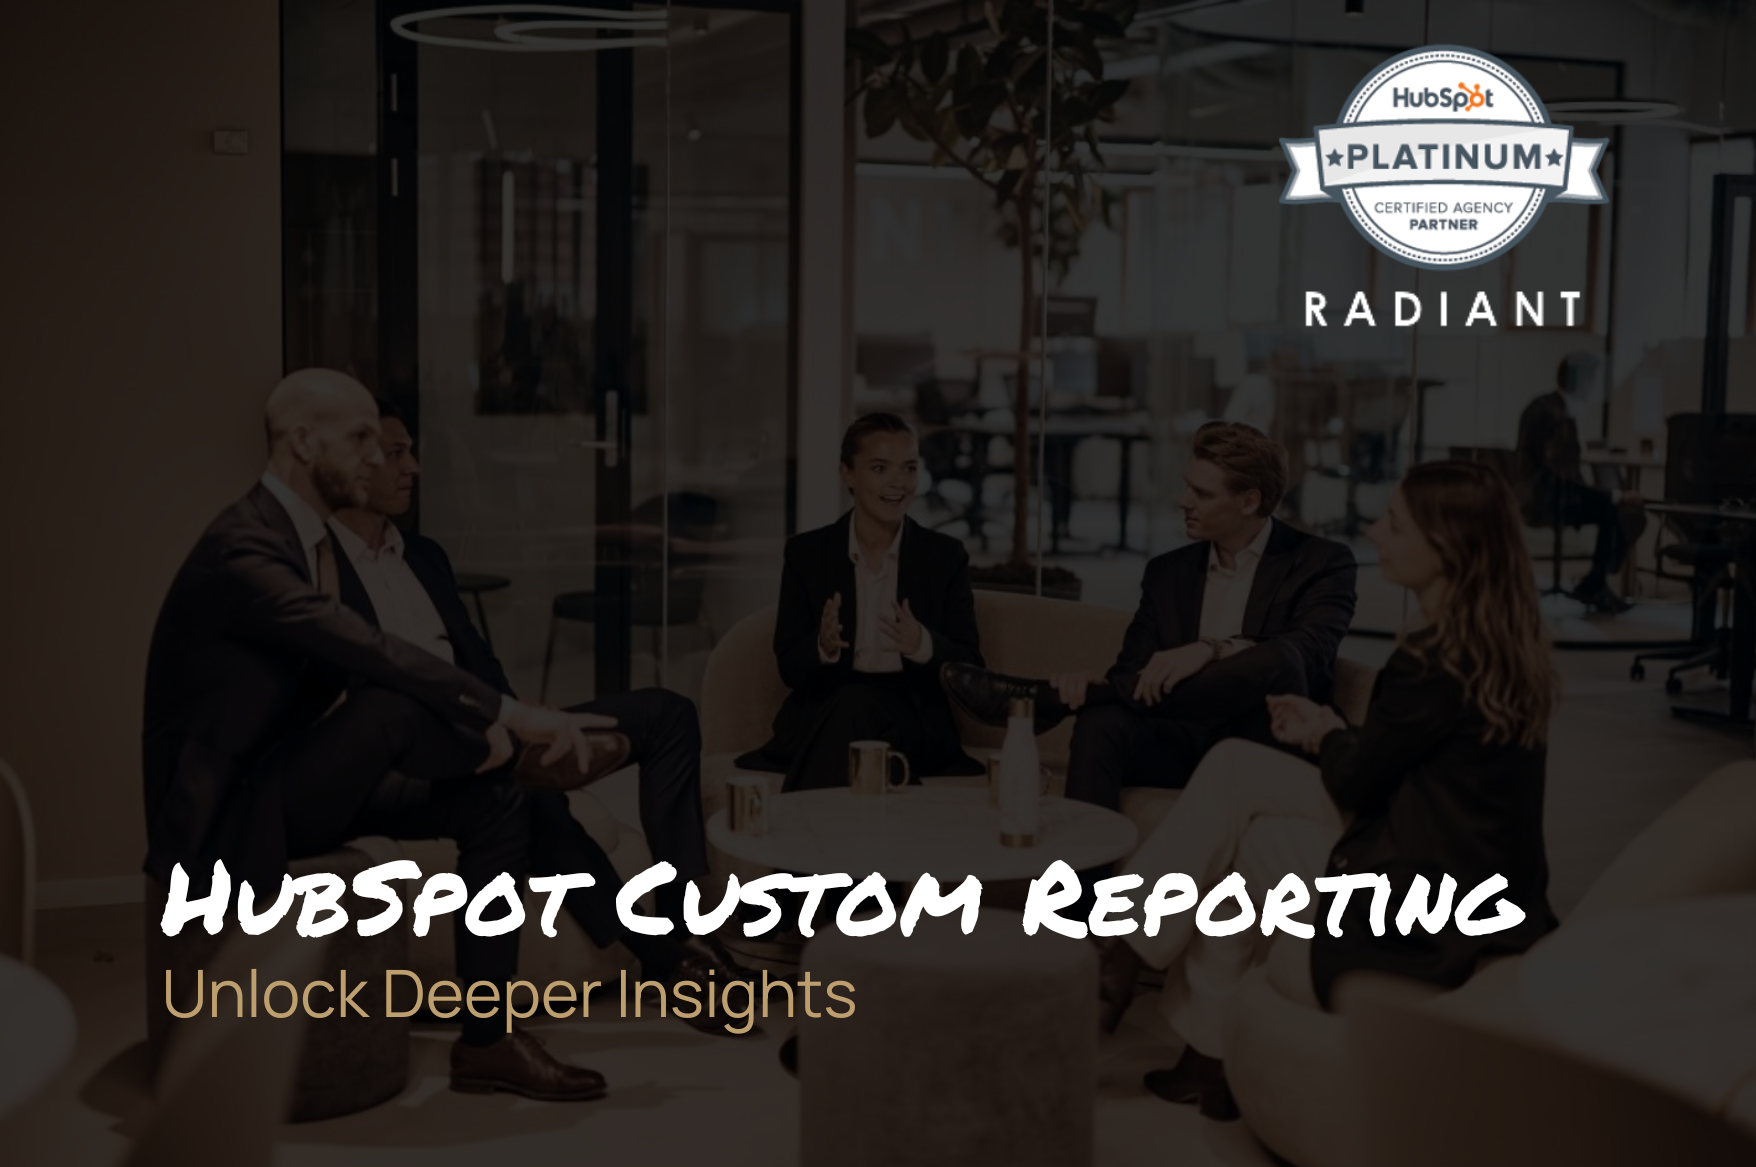 HubSpot Custom Reporting: Unlock Deeper Insights